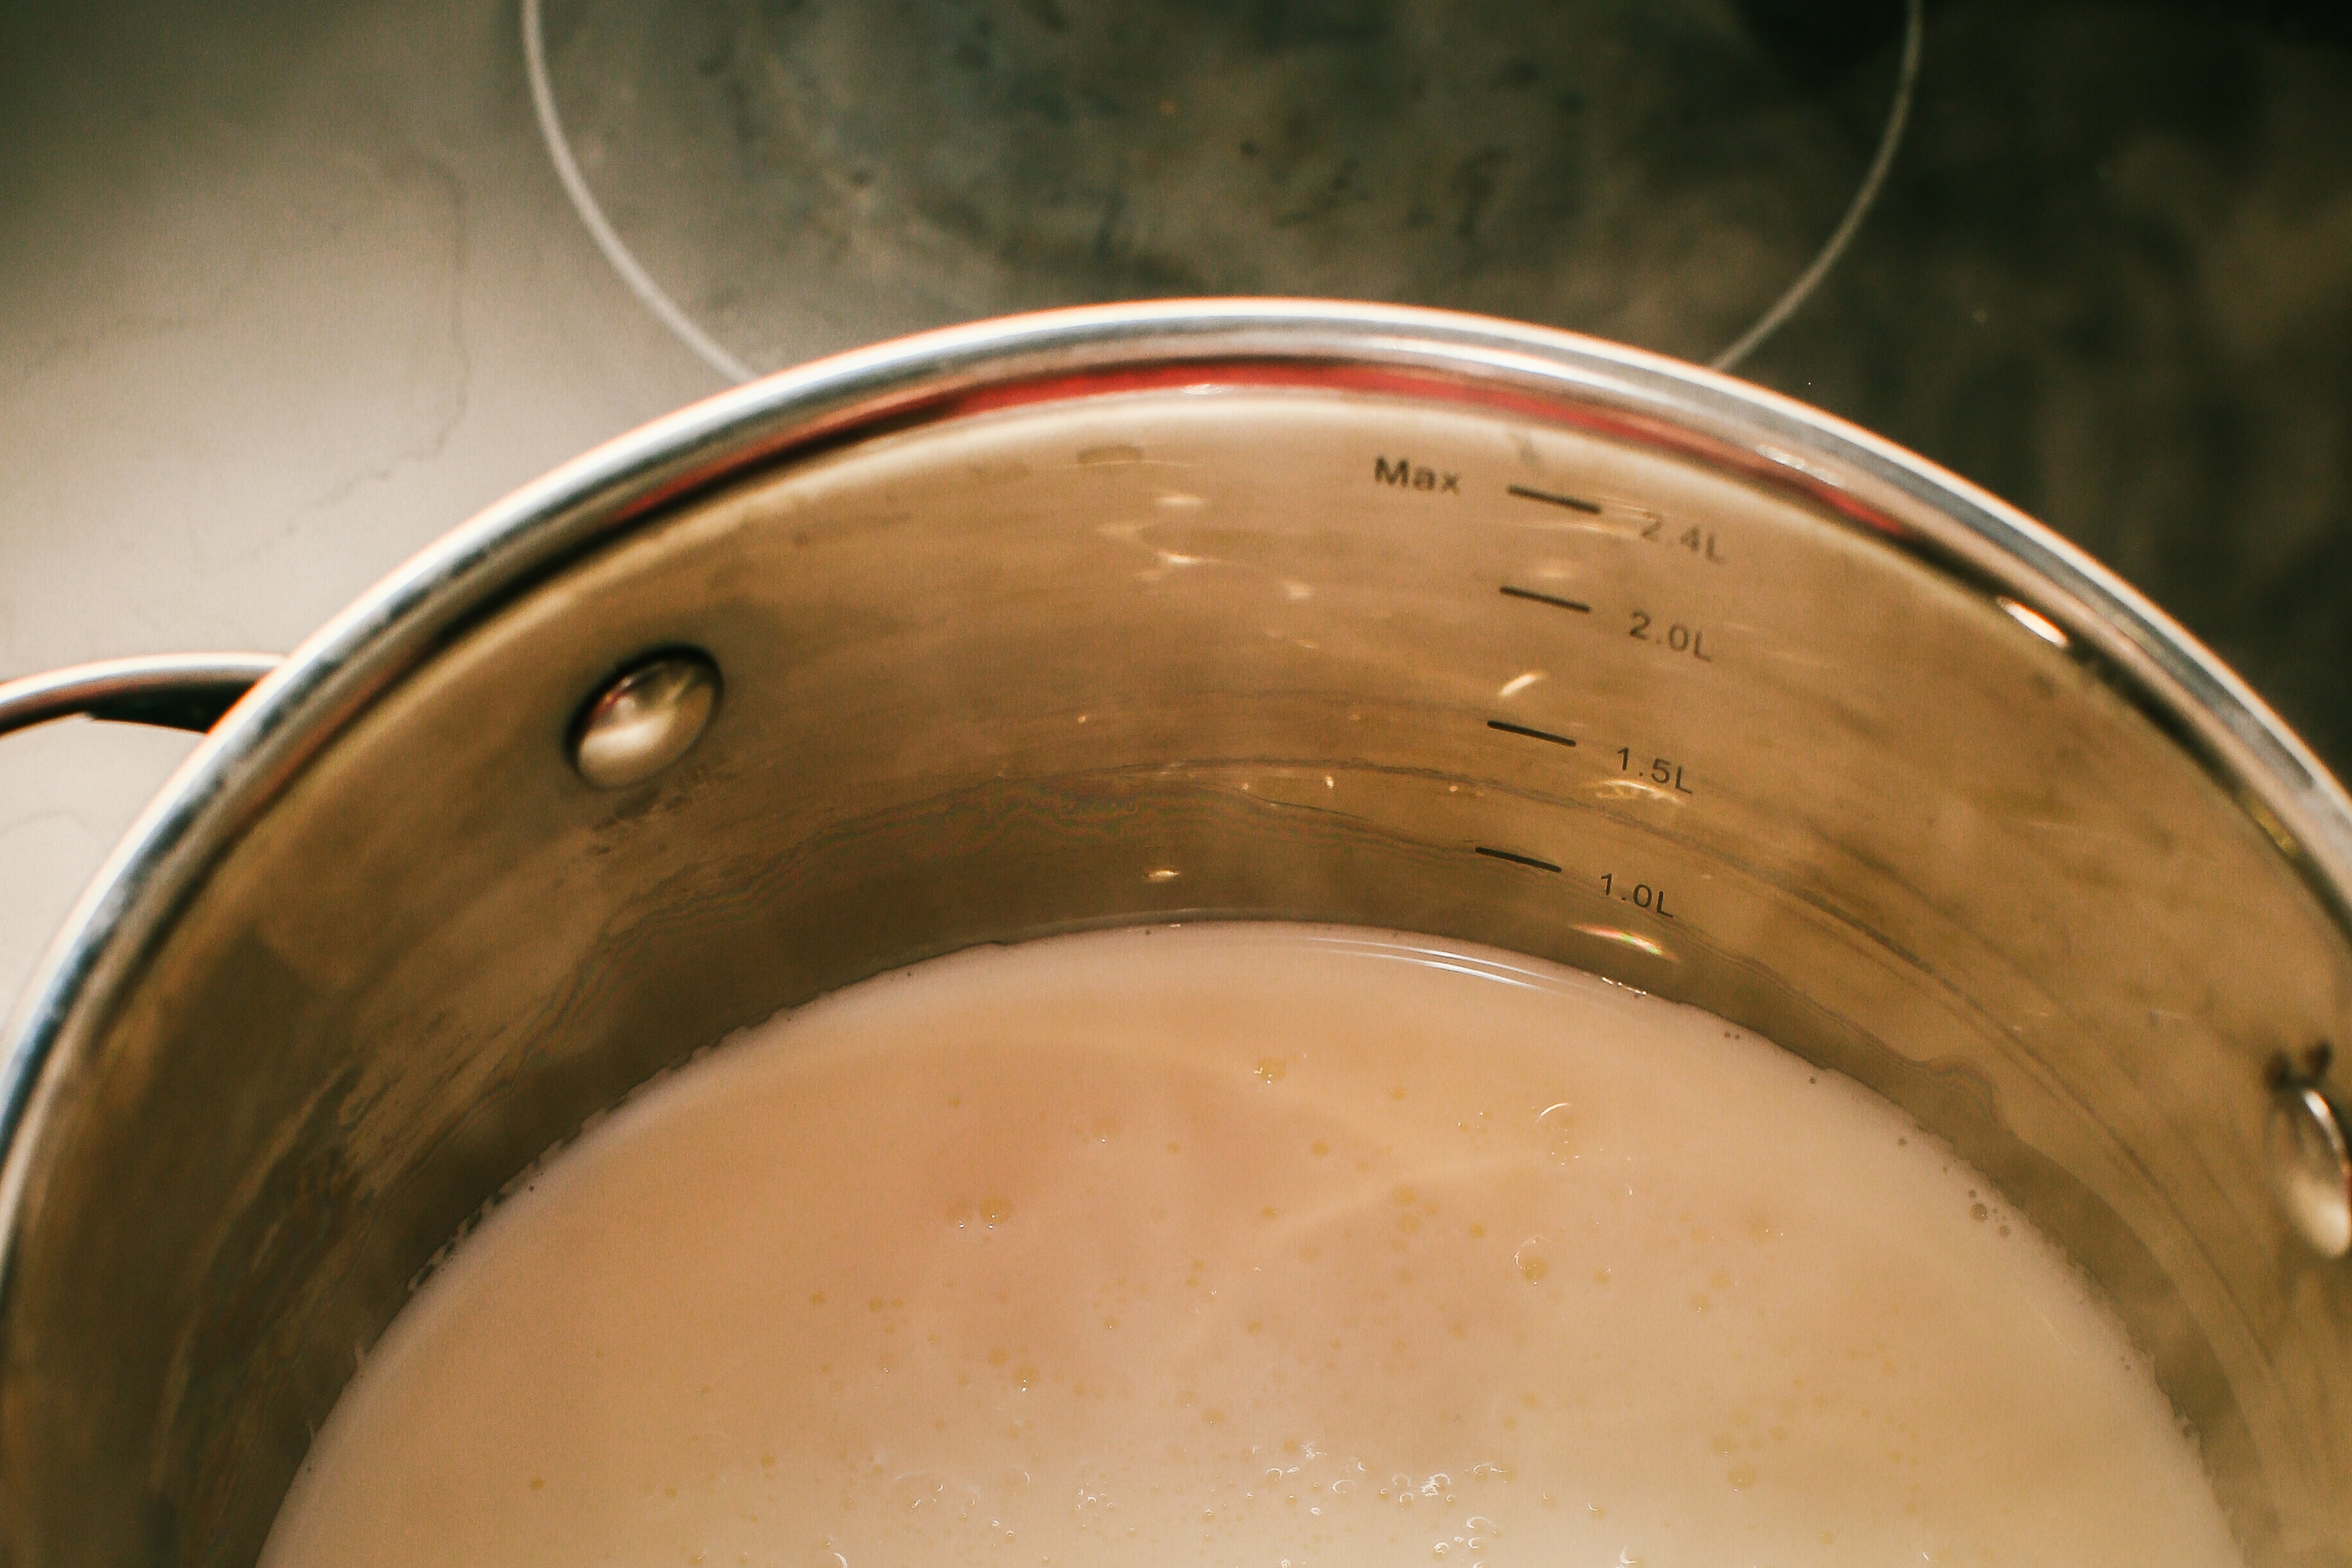  Щоб приготувати крем патісьєр,  треба нагріти молоко в сотейнику (майже до кипіння).